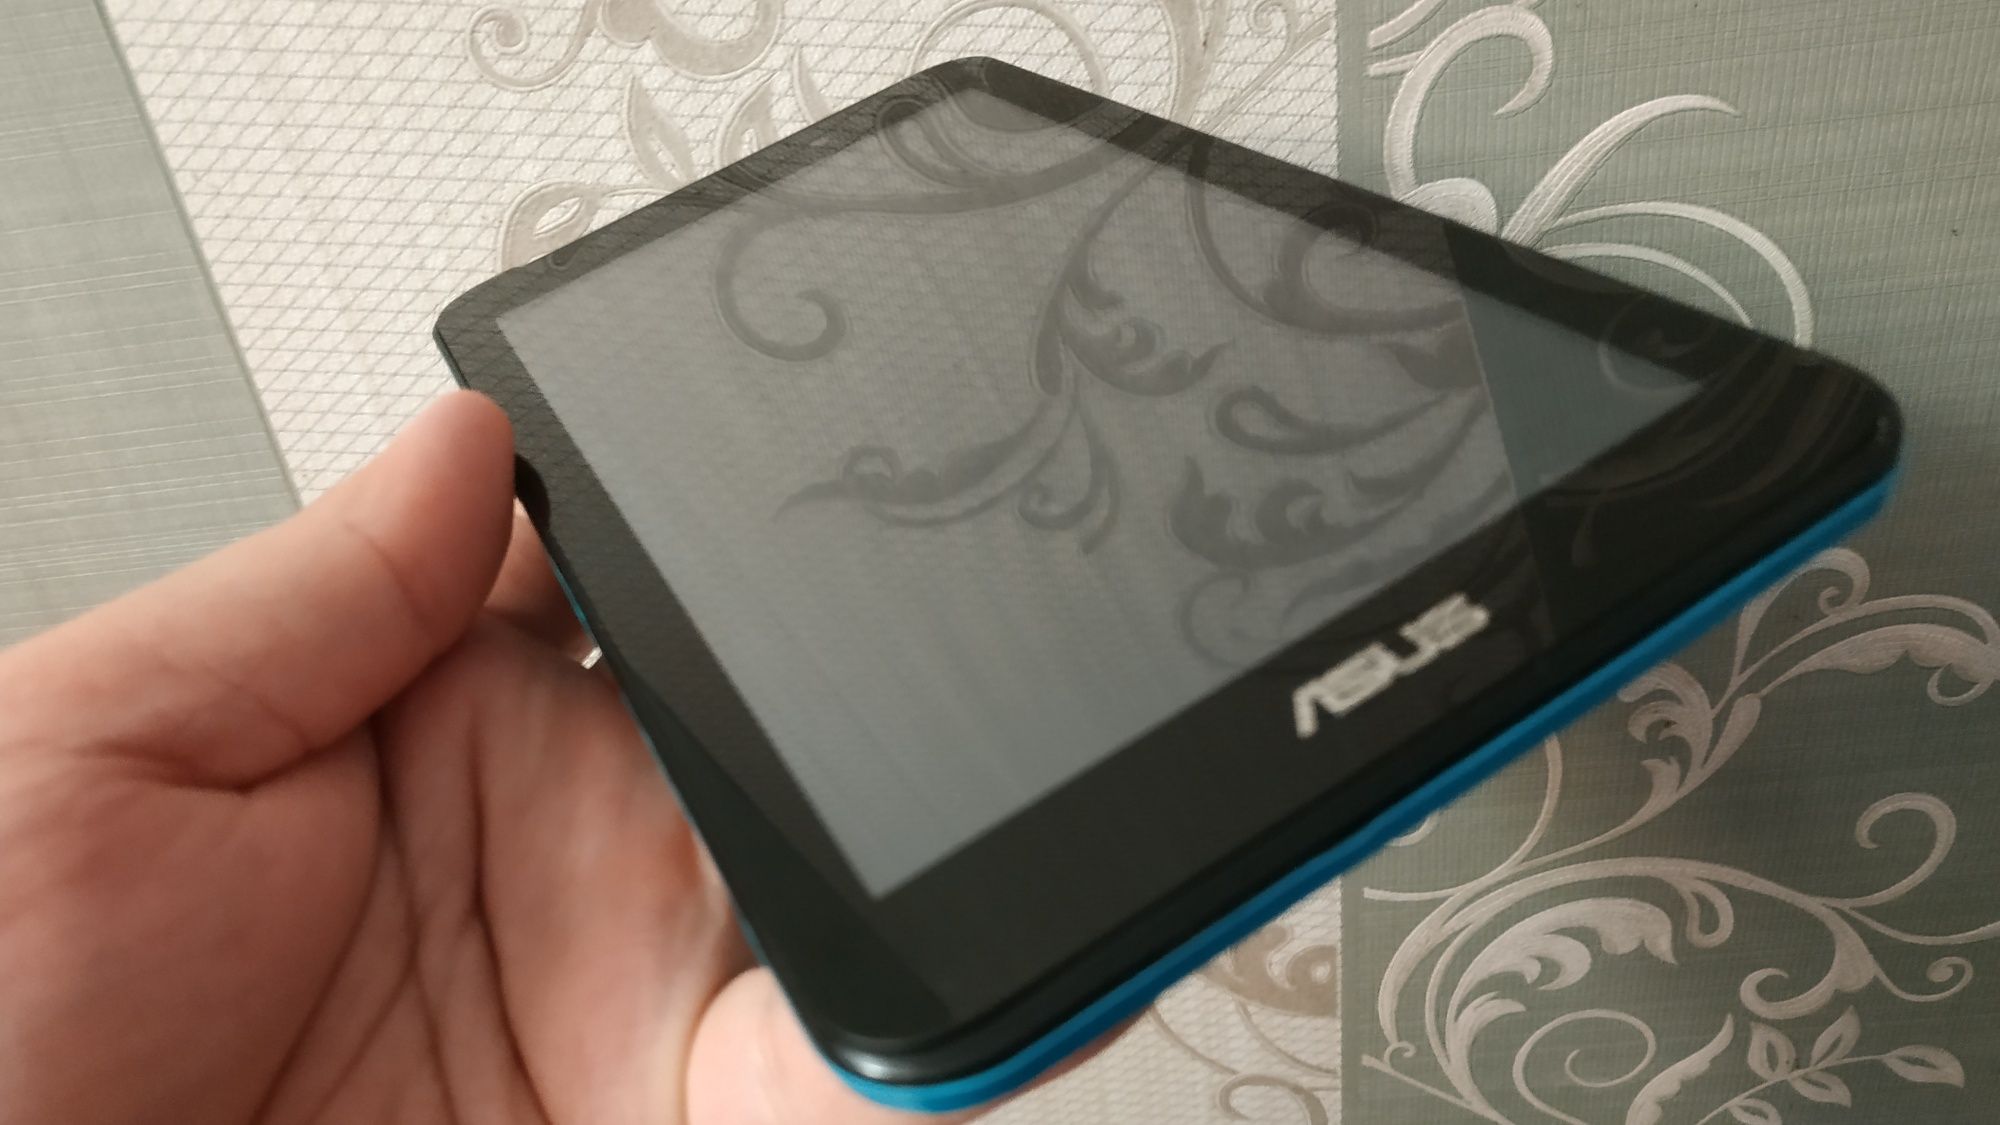 Asus Fonepad 7 (k012) dual-sim